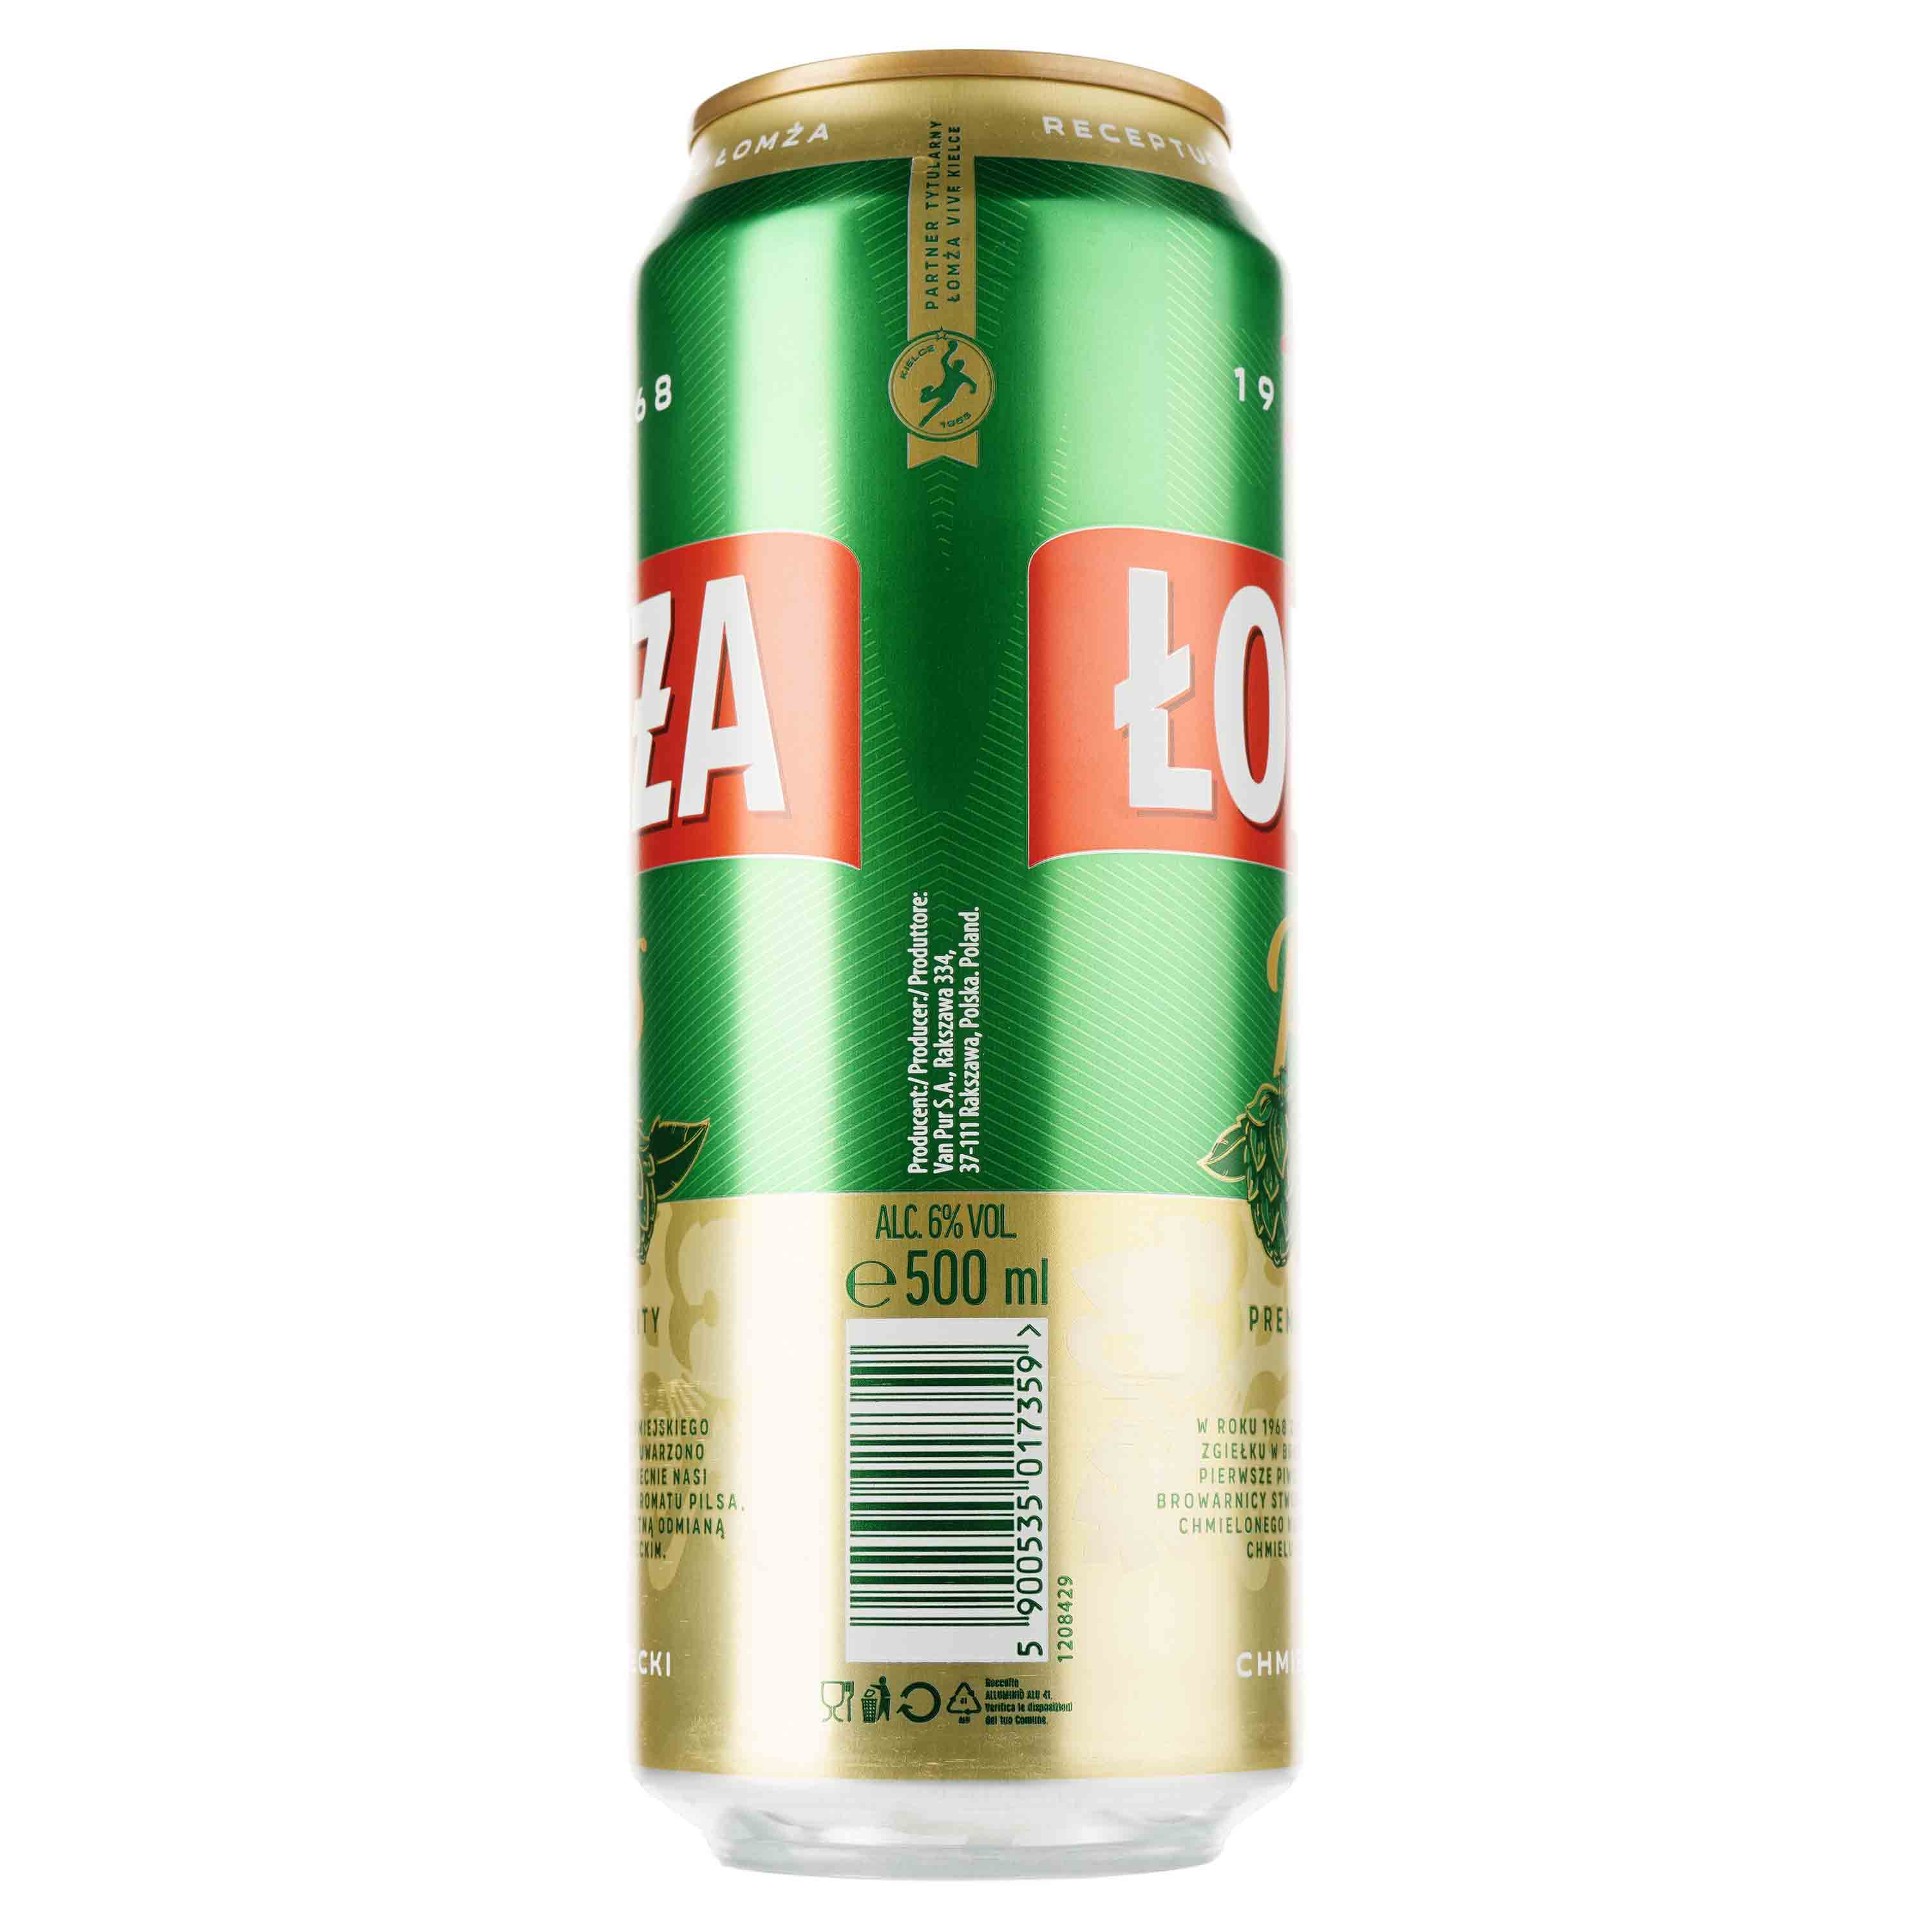 Пиво Lomza Pils светлое, 6%, ж/б, 0.5 л - фото 2